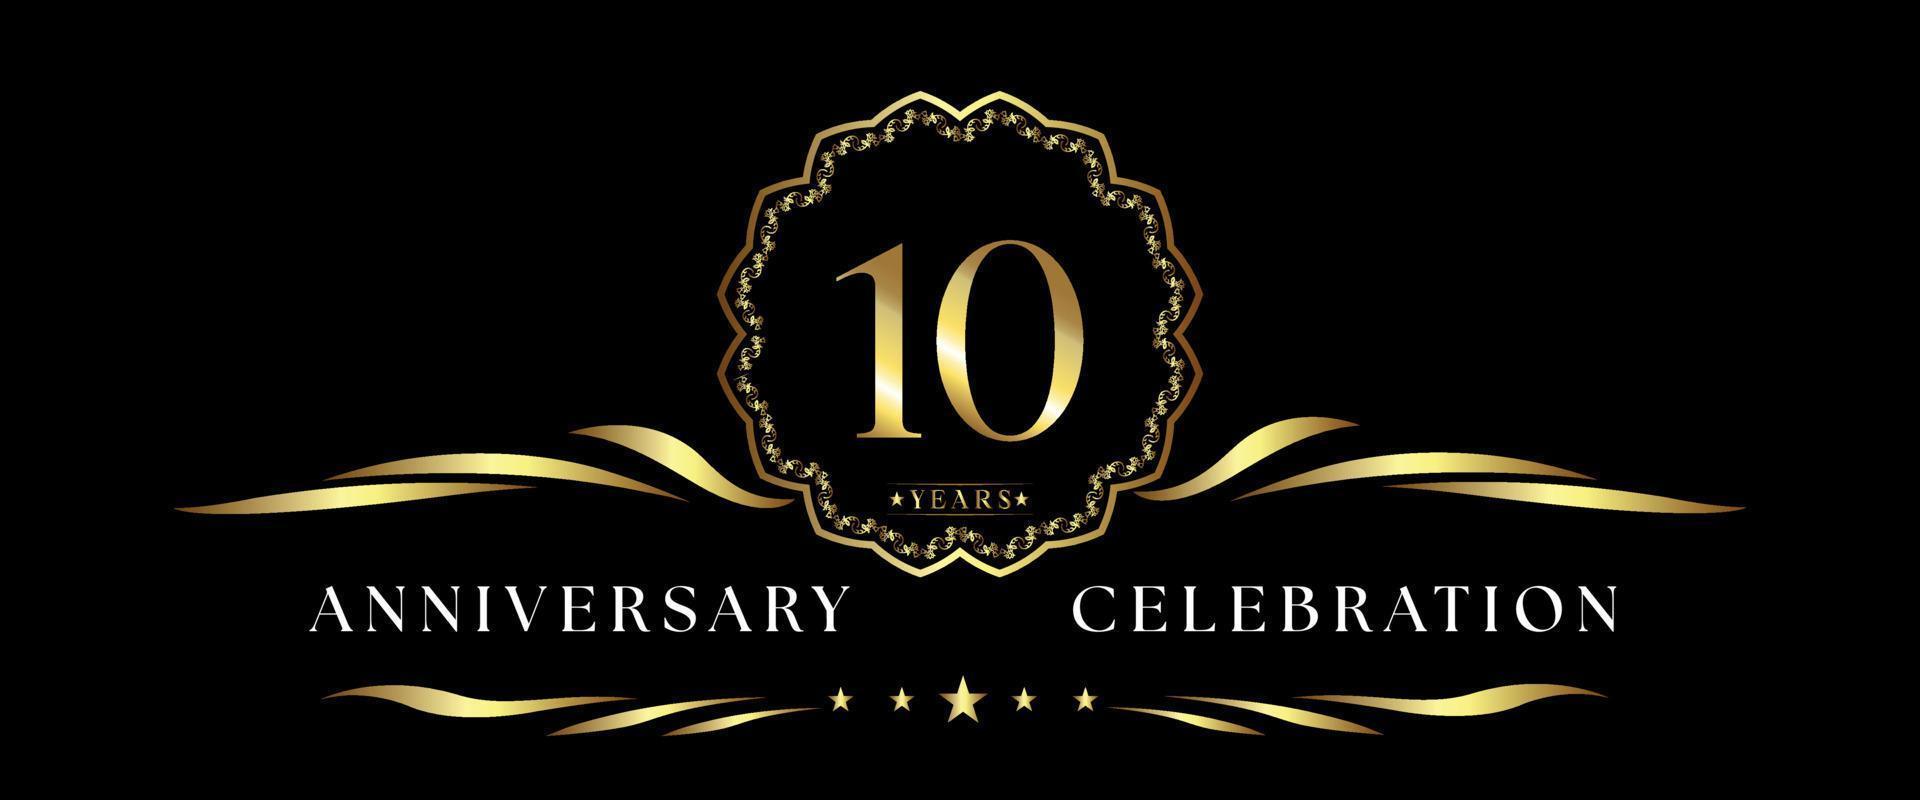 10 års jubileumsfirande med guld dekorativ ram isolerad på svart bakgrund. vektordesign för gratulationskort, födelsedagsfest, bröllop, fest, ceremoni. 10 års jubileumslogga. vektor